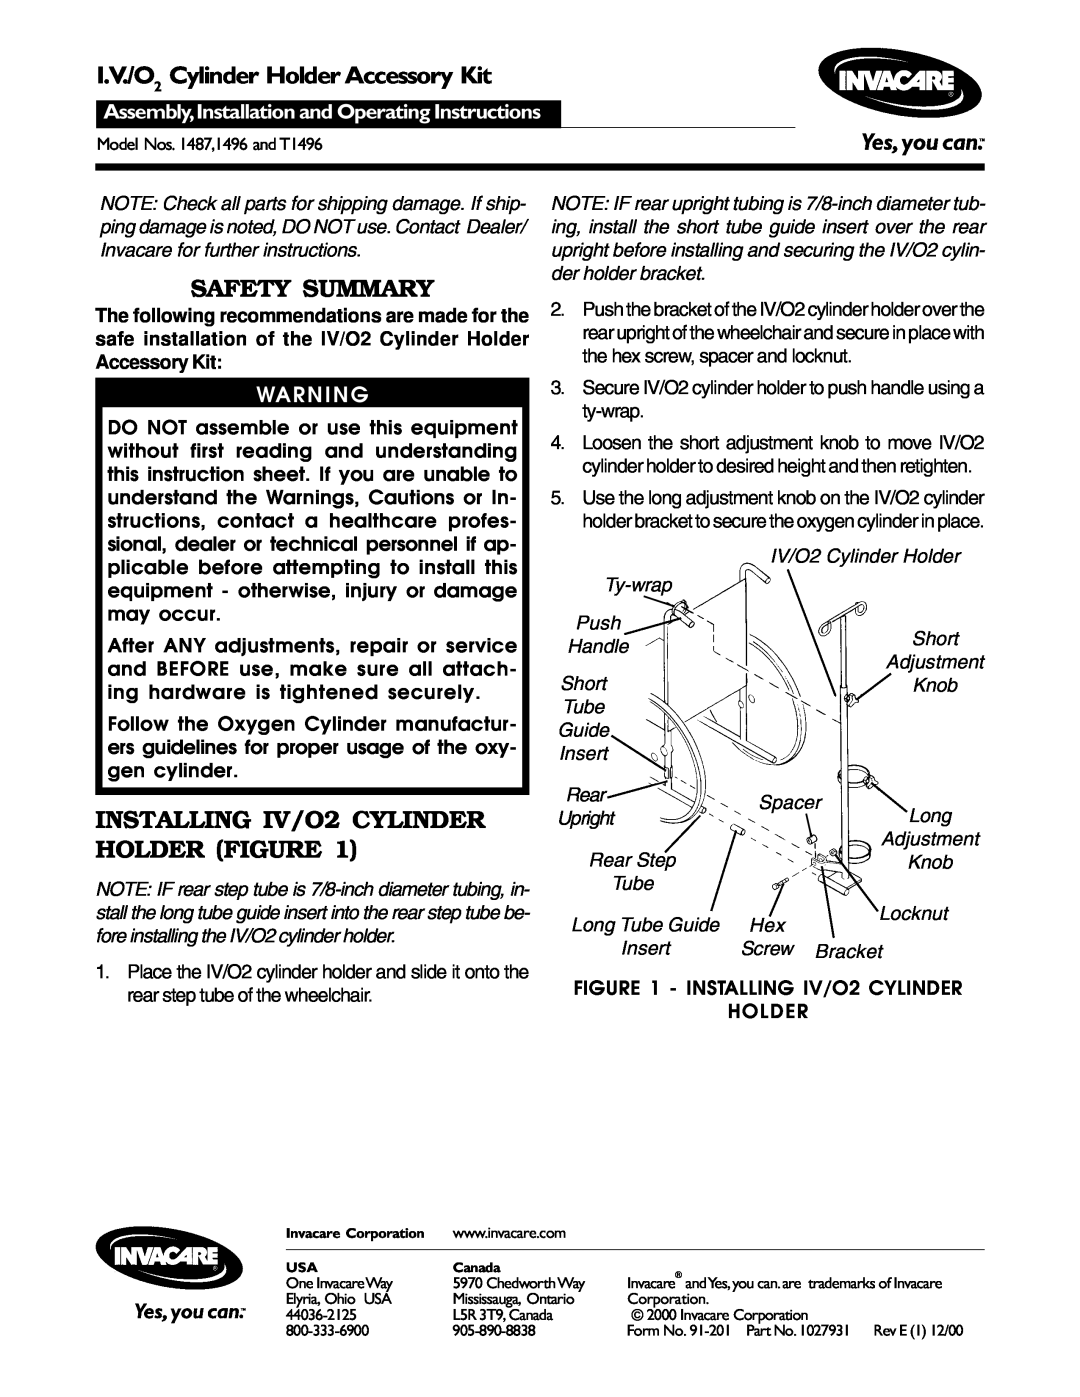 Invacare 1487, T1496 operating instructions I.V./O2 Cylinder Holder Accessory Kit, Safety Summary 